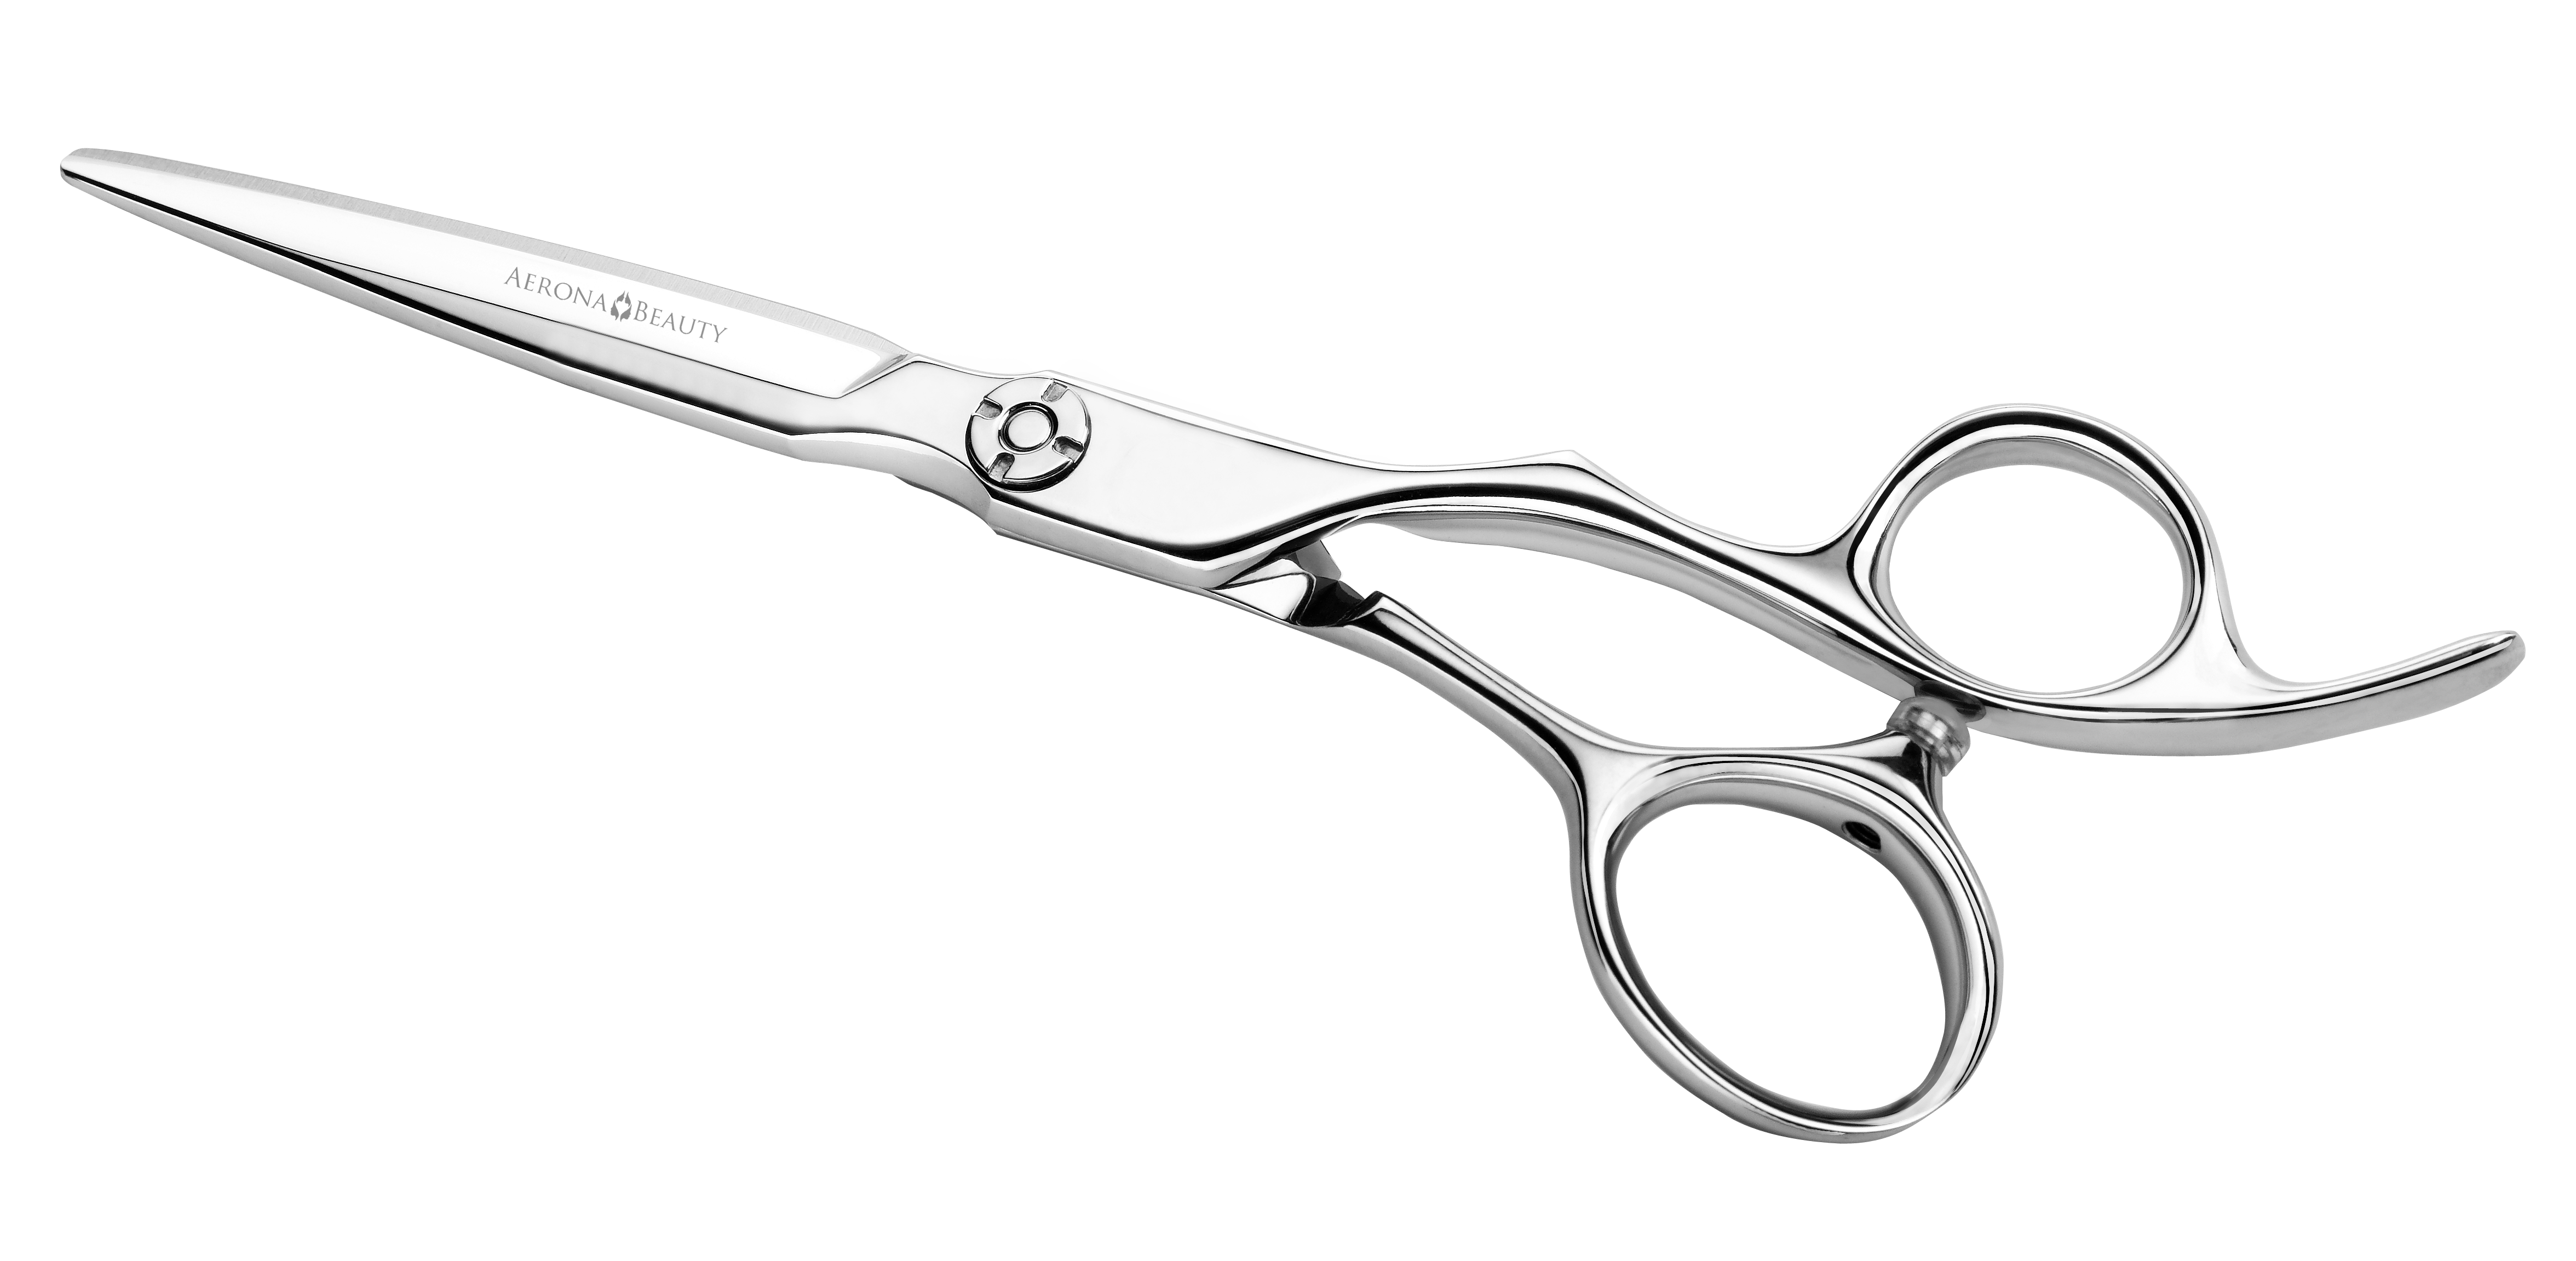 clippers, cut, scissor, sciss